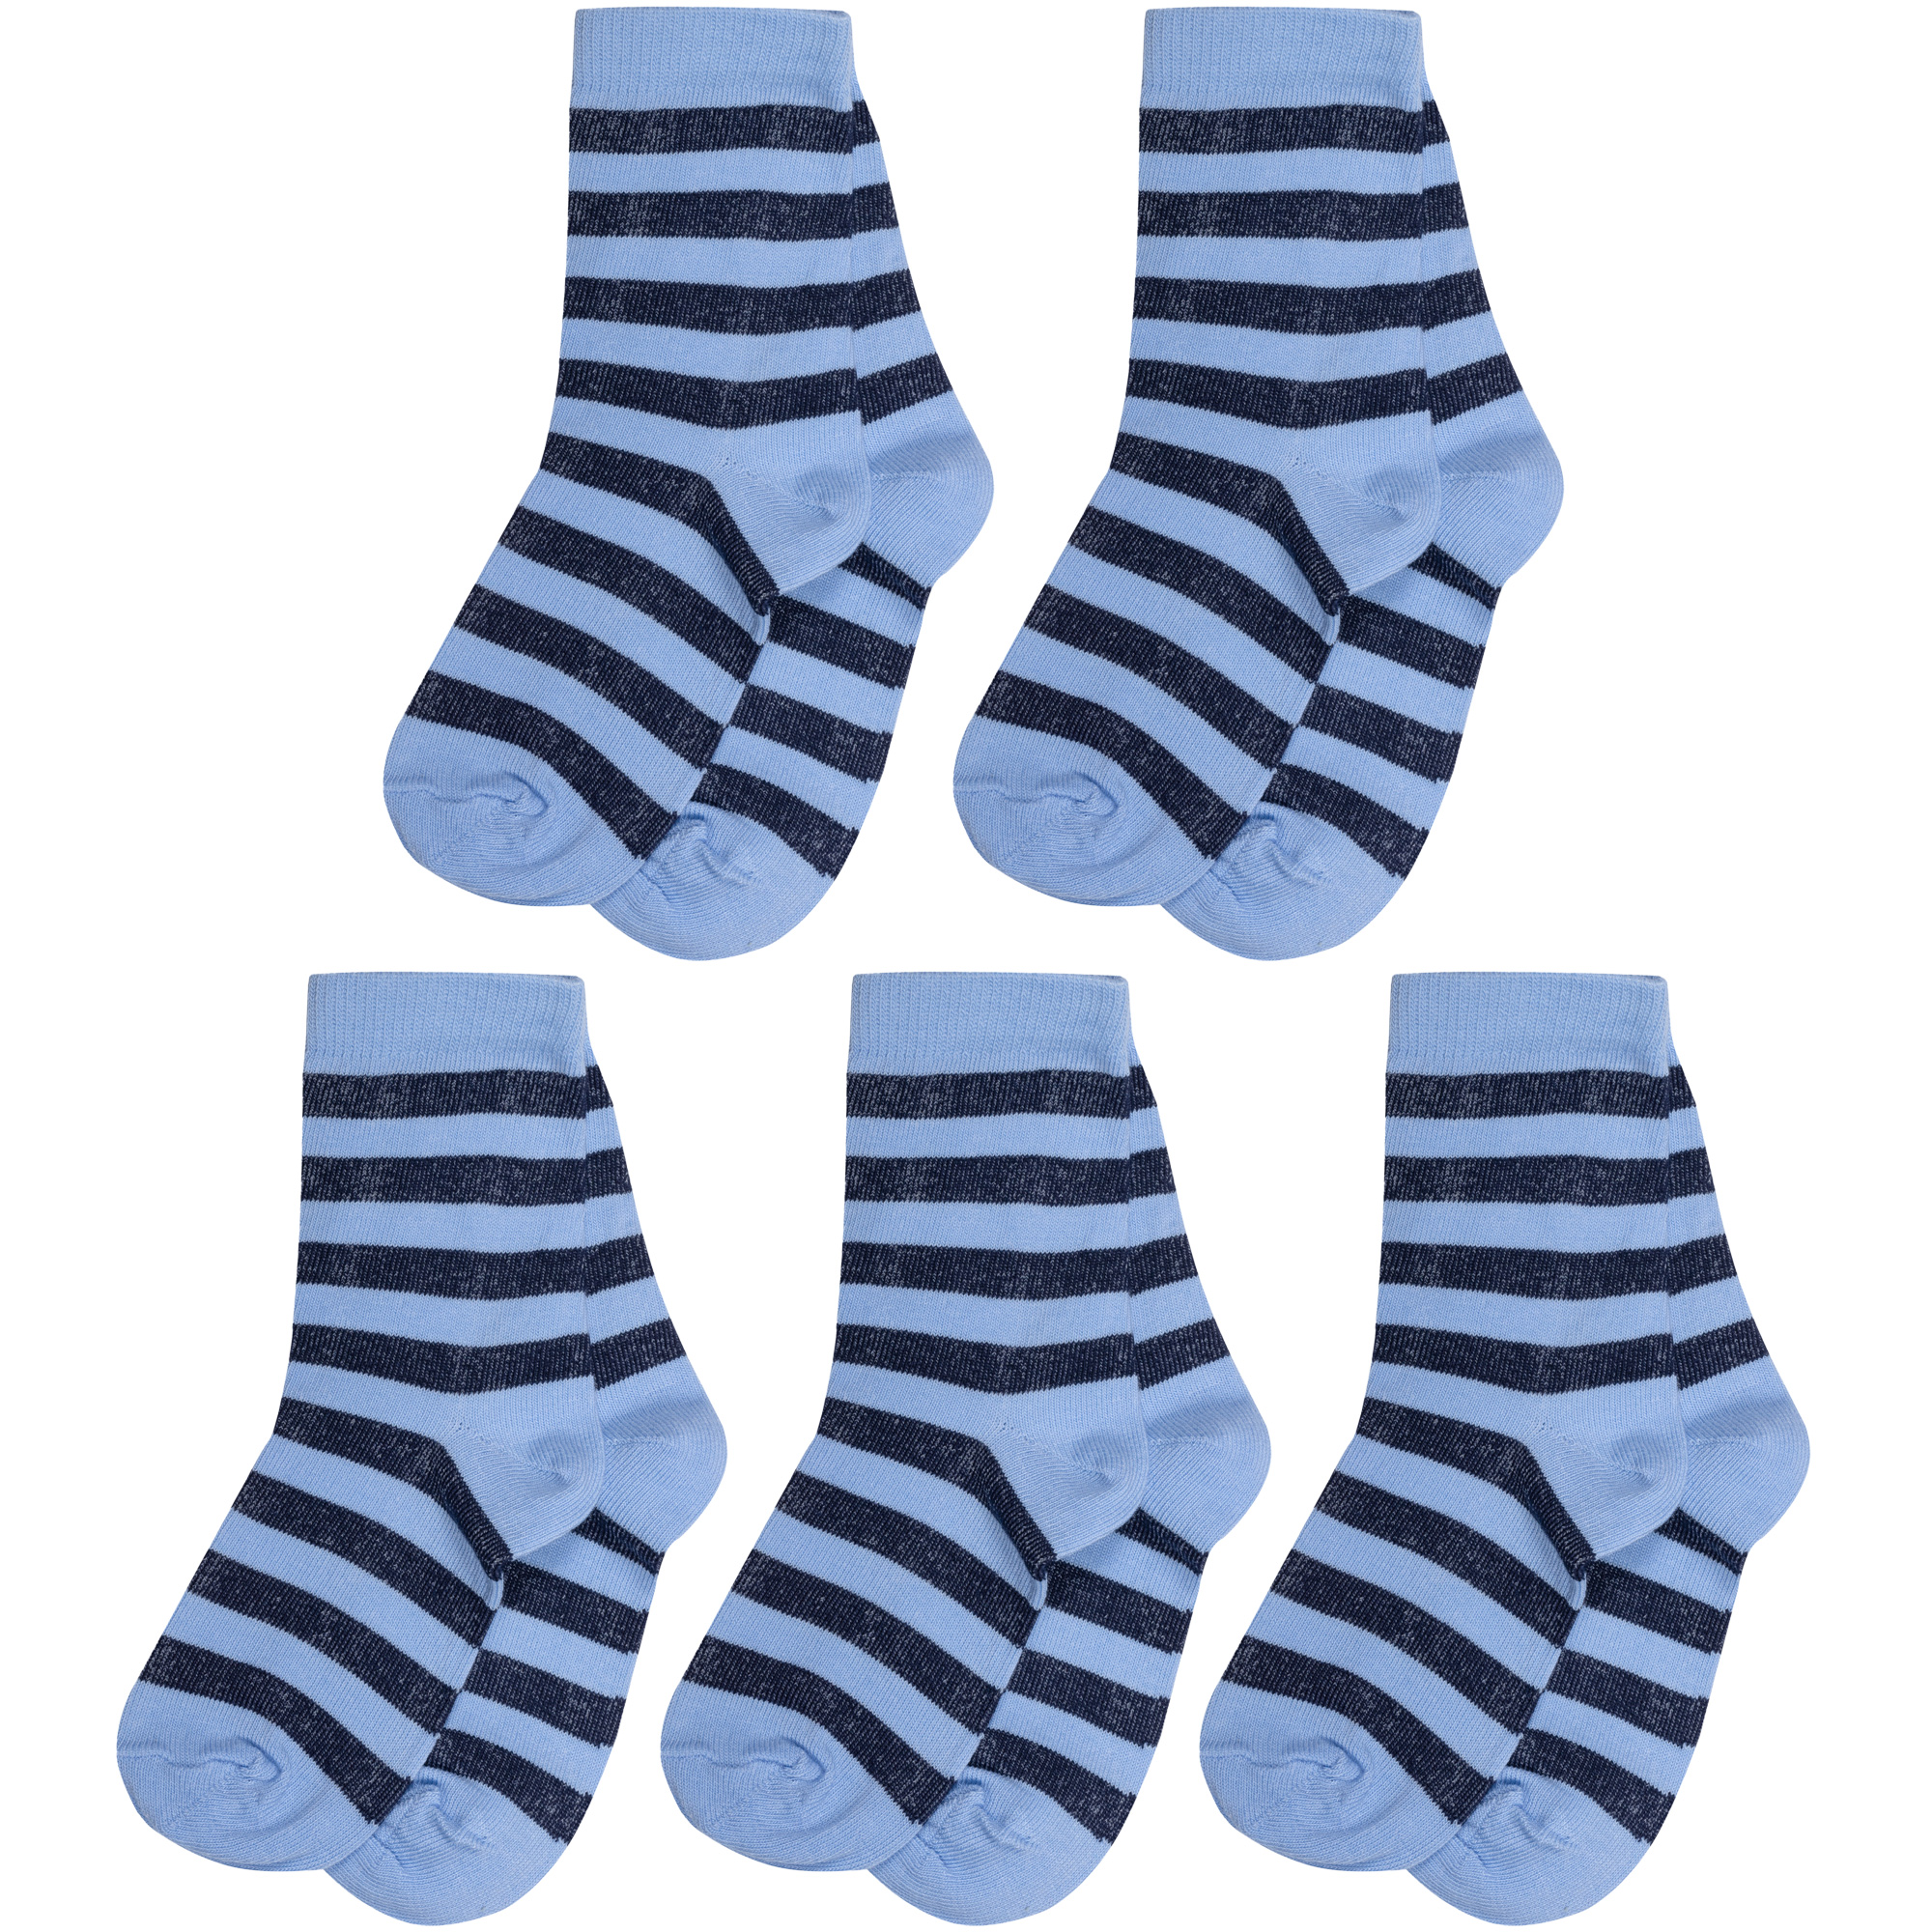 Носки детские Борисоглебский трикотаж 5-8С83, голубые с темно-синими полосами, 12-14